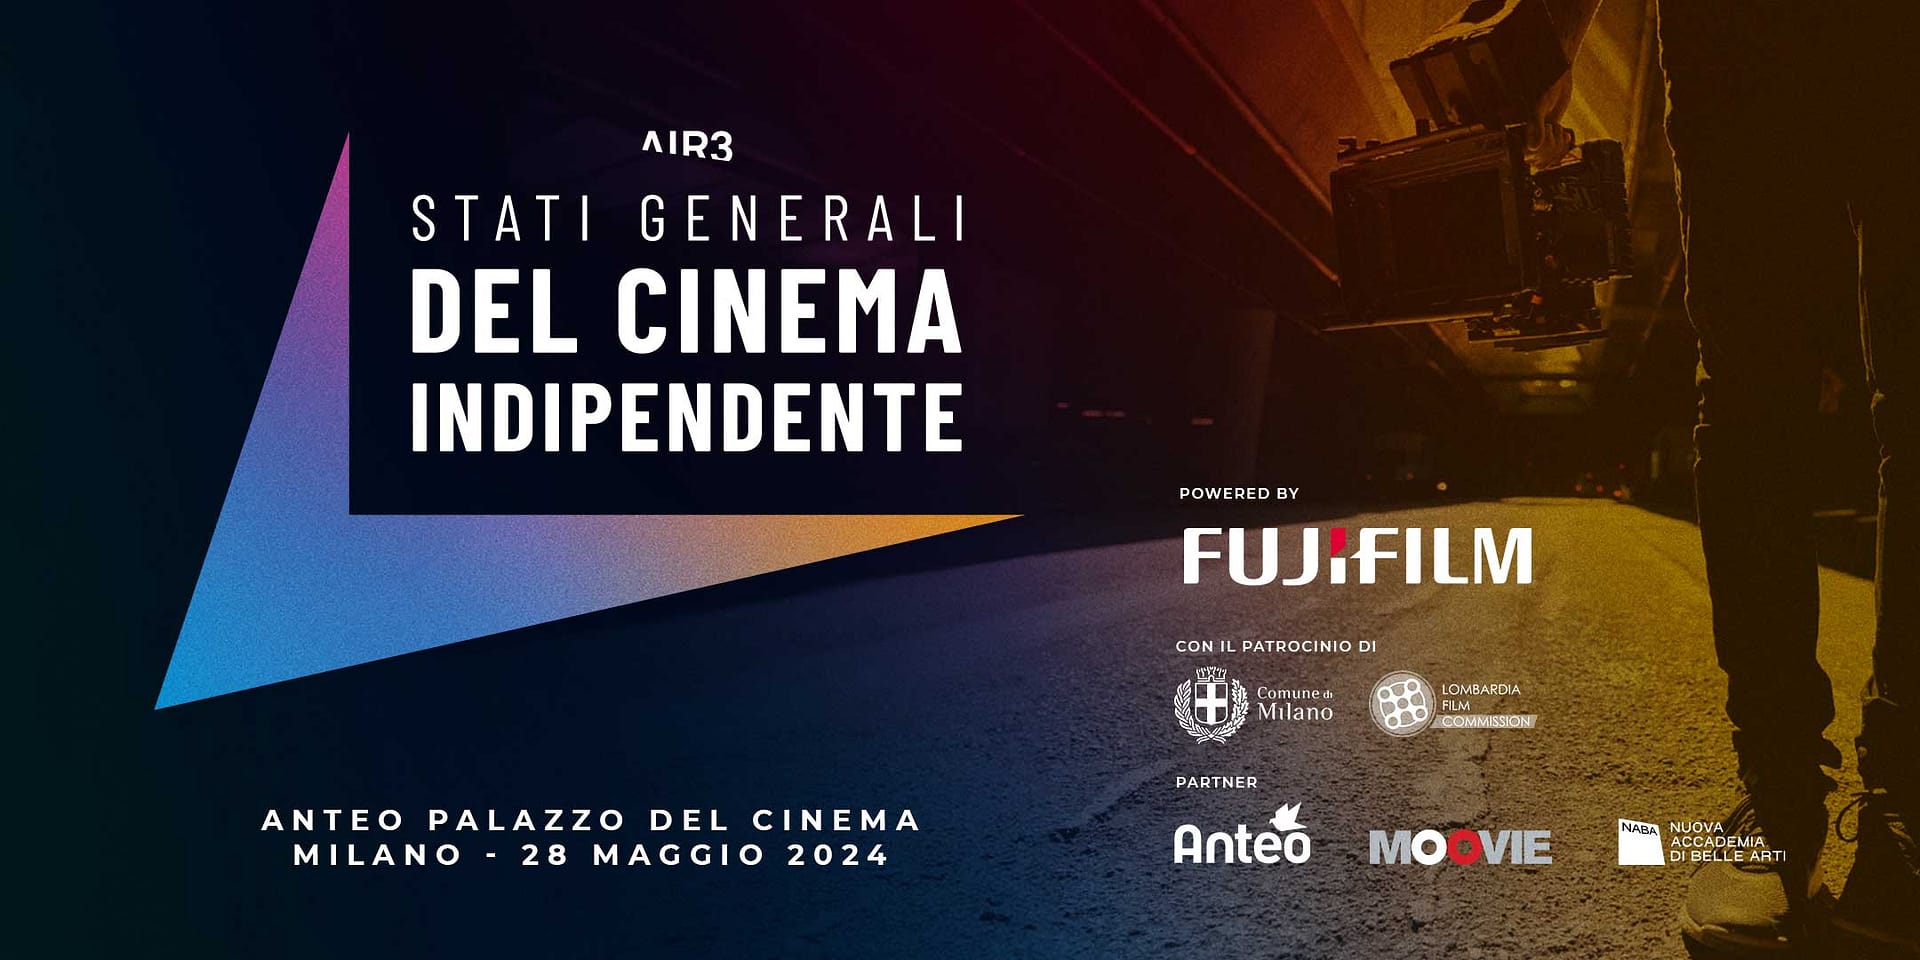 Dal 28 Maggio al via gli Stati Generali del Cinema Indipendente a Milano